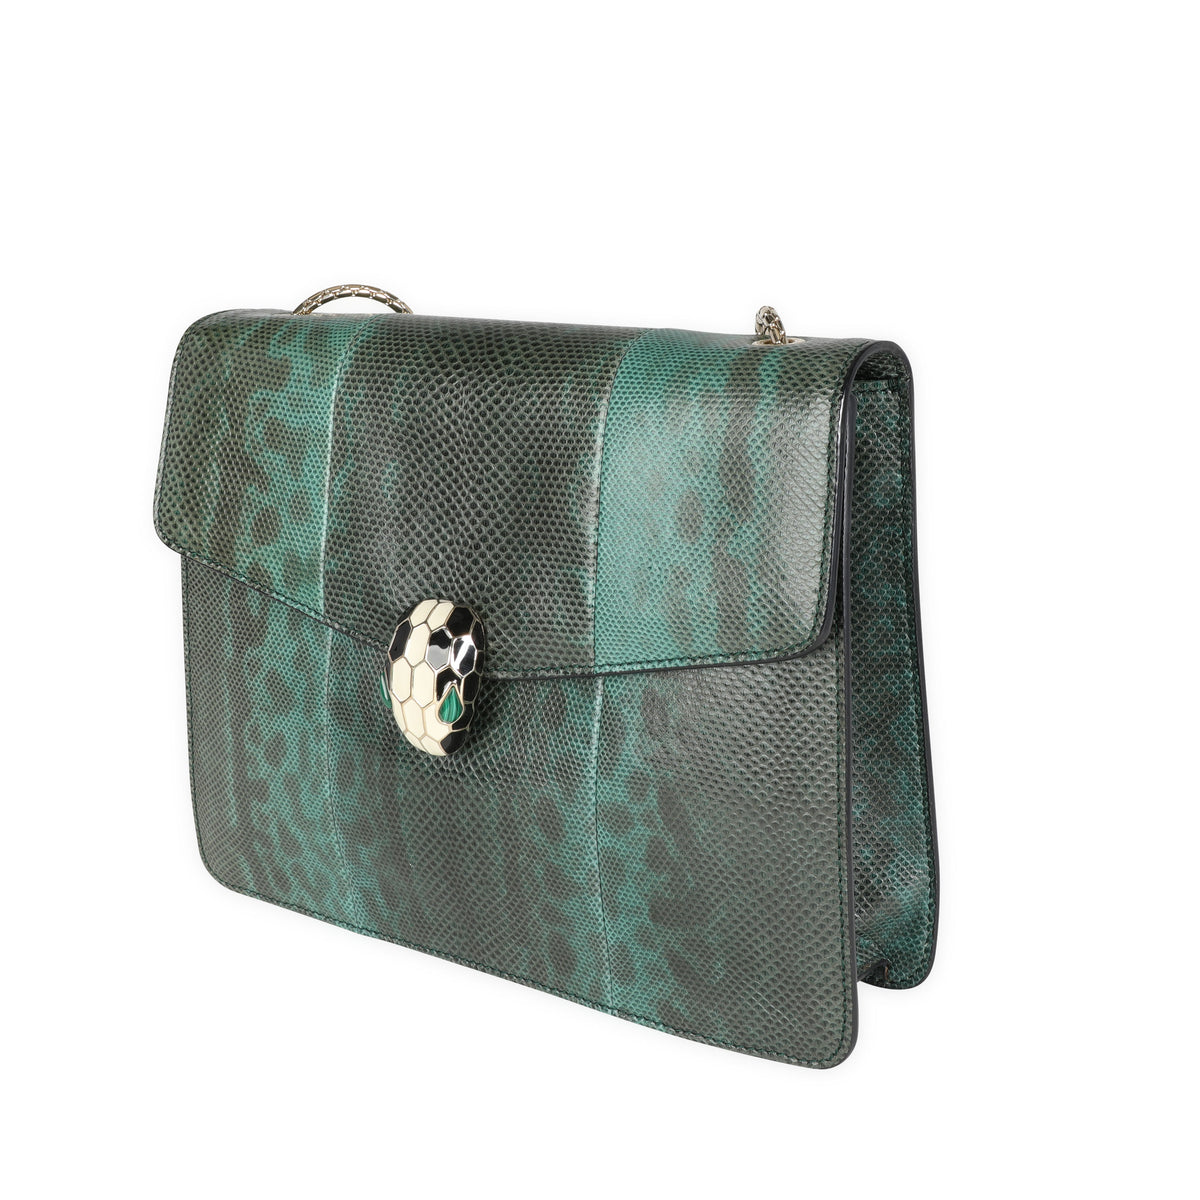 Bvlgari Black Lizard Serpenti Flap Bag, Luxury, Bags & Wallets on